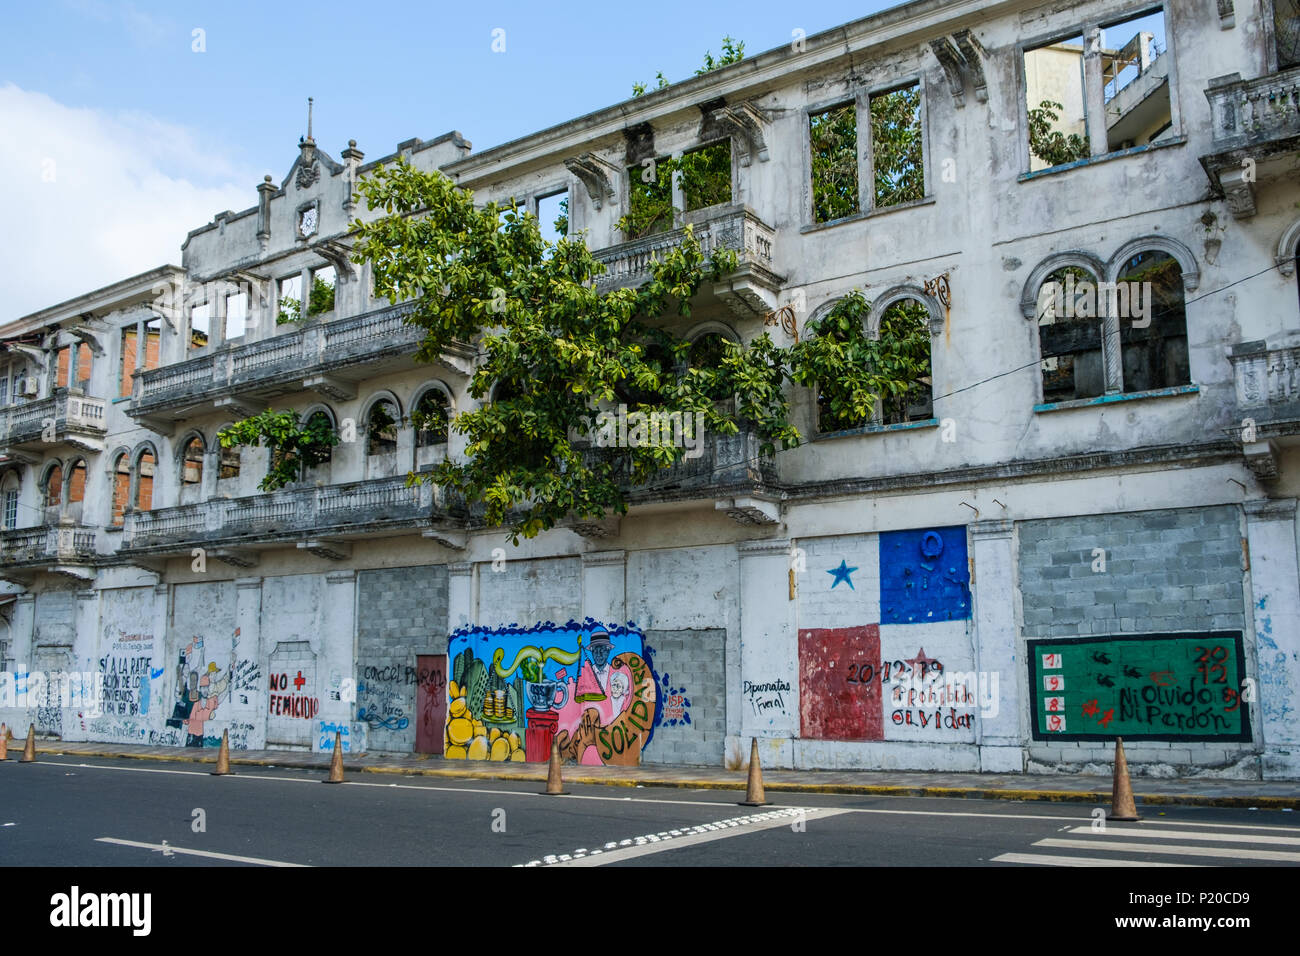 La ville de Panama, Panama - mars 2018 : Ancien bâtiment façade ruine avec graffiti en vieille ville, Casco Viejo, Panama City Banque D'Images